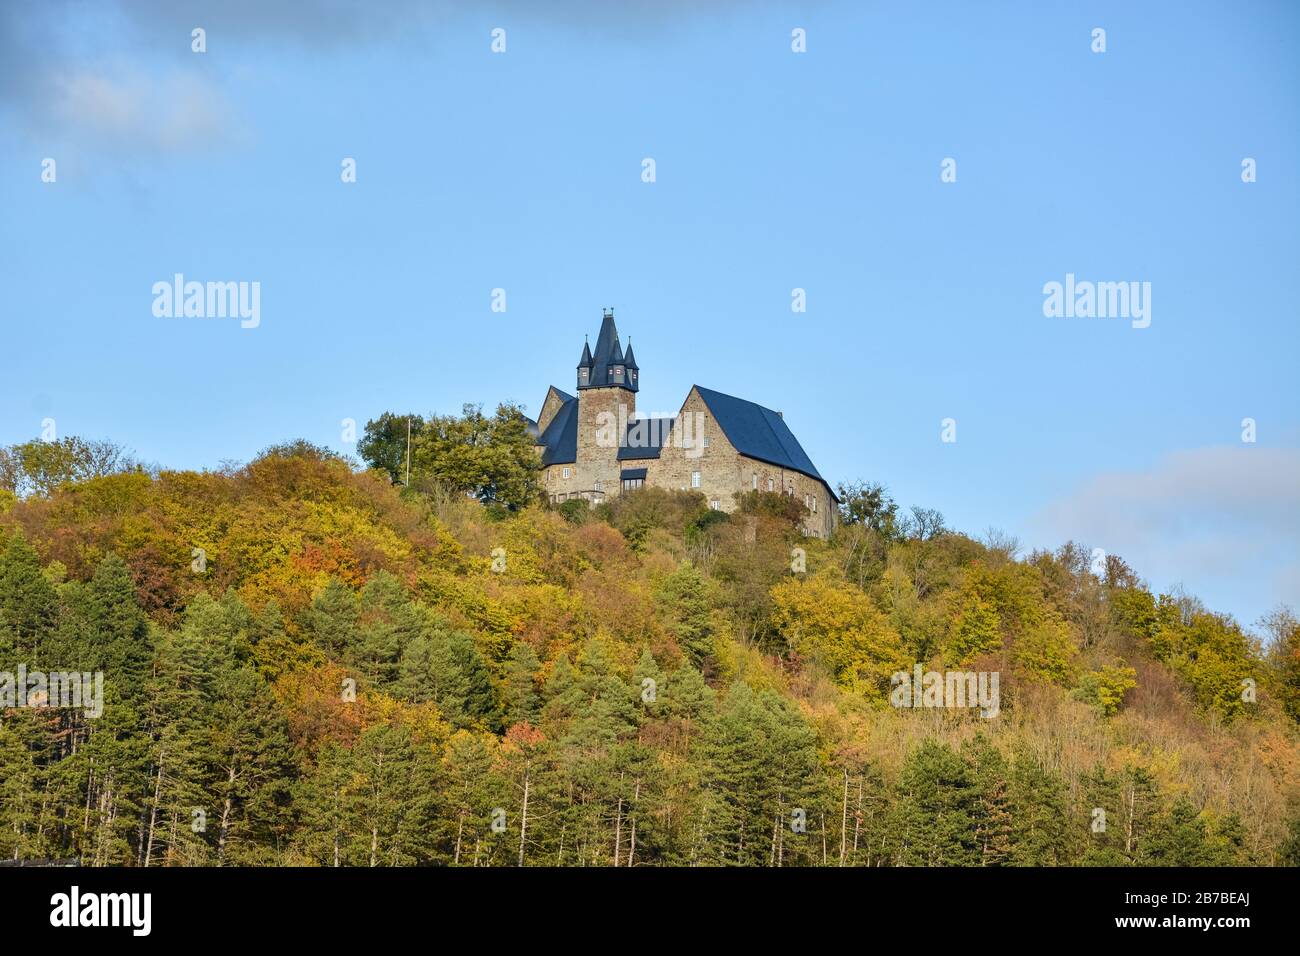 Das Schloss in Spangenberg auf einem Hügel in Nordhessen, Deutschland im Herbst an einem sonnigen Tag Stockfoto